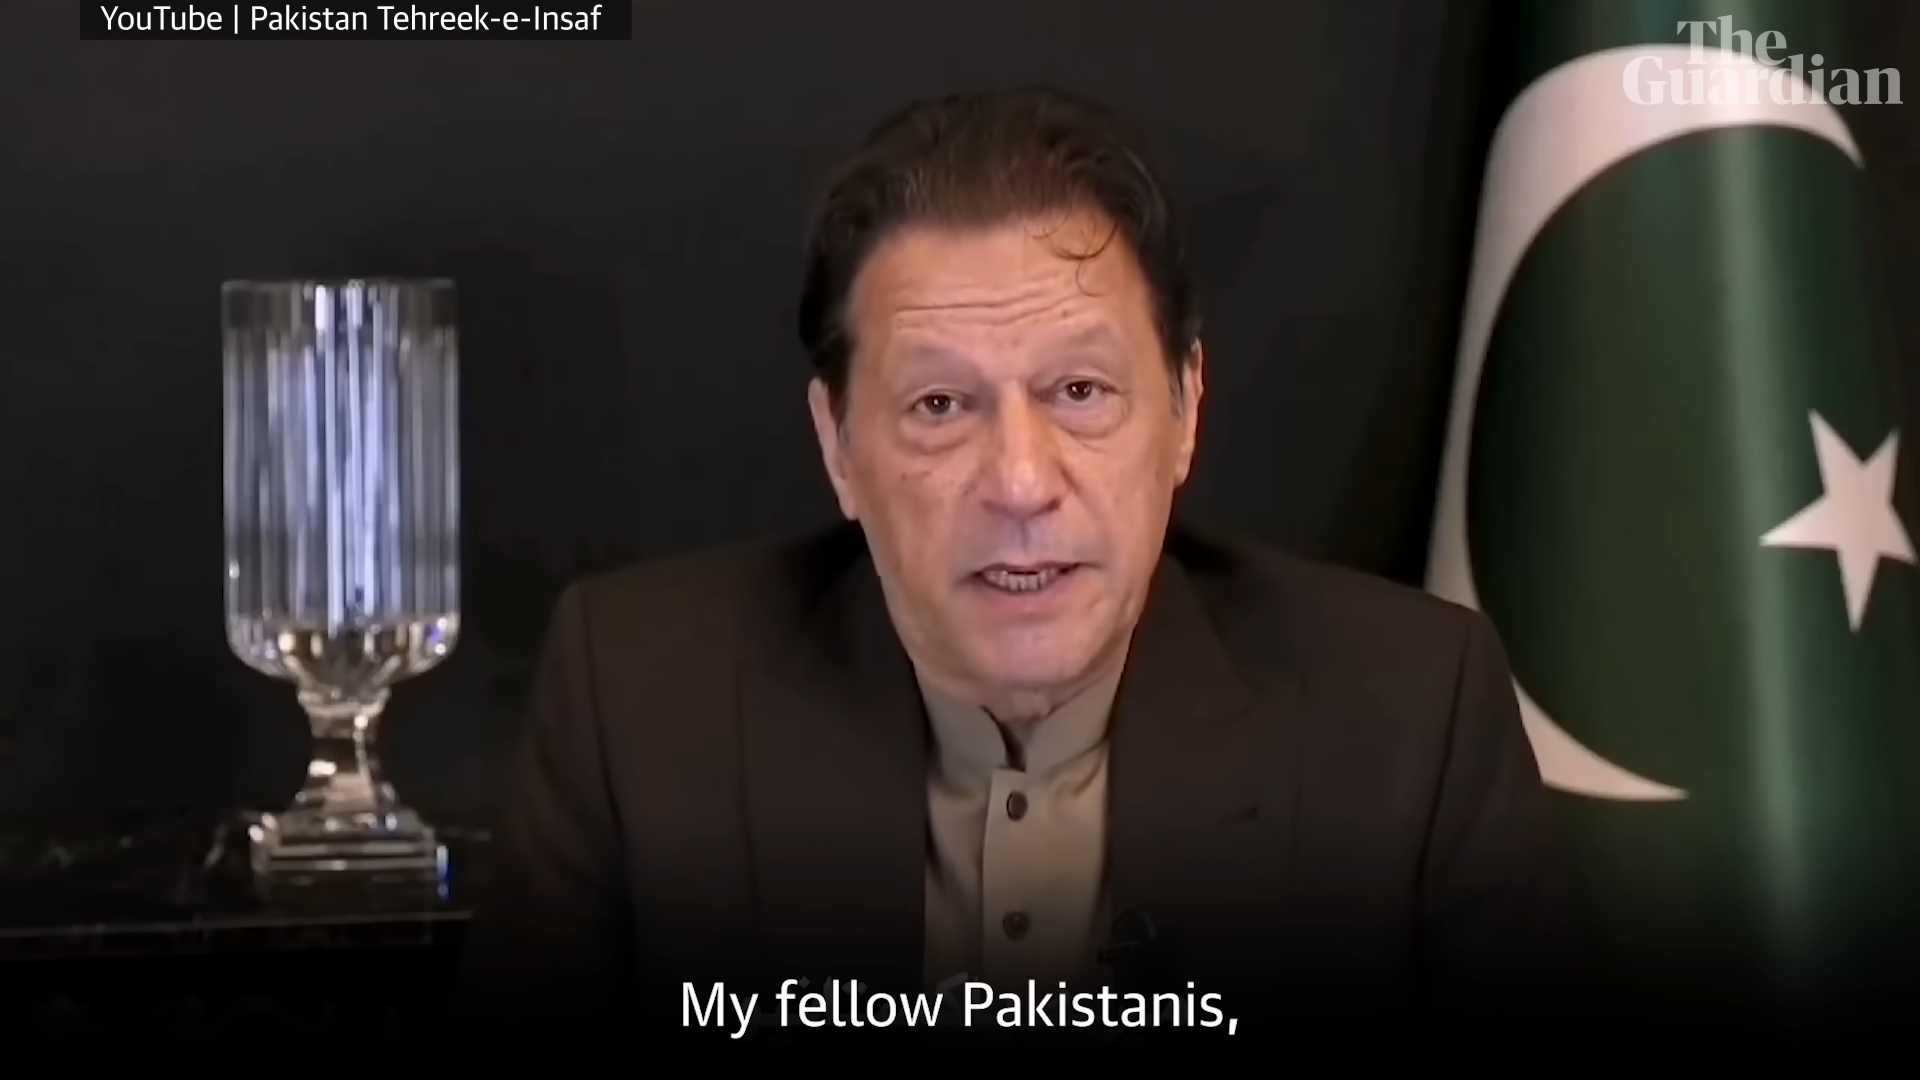 KI übernimmt die Stimme des inhaftierten Imran Khan bei einer virtuellen Kundgebung